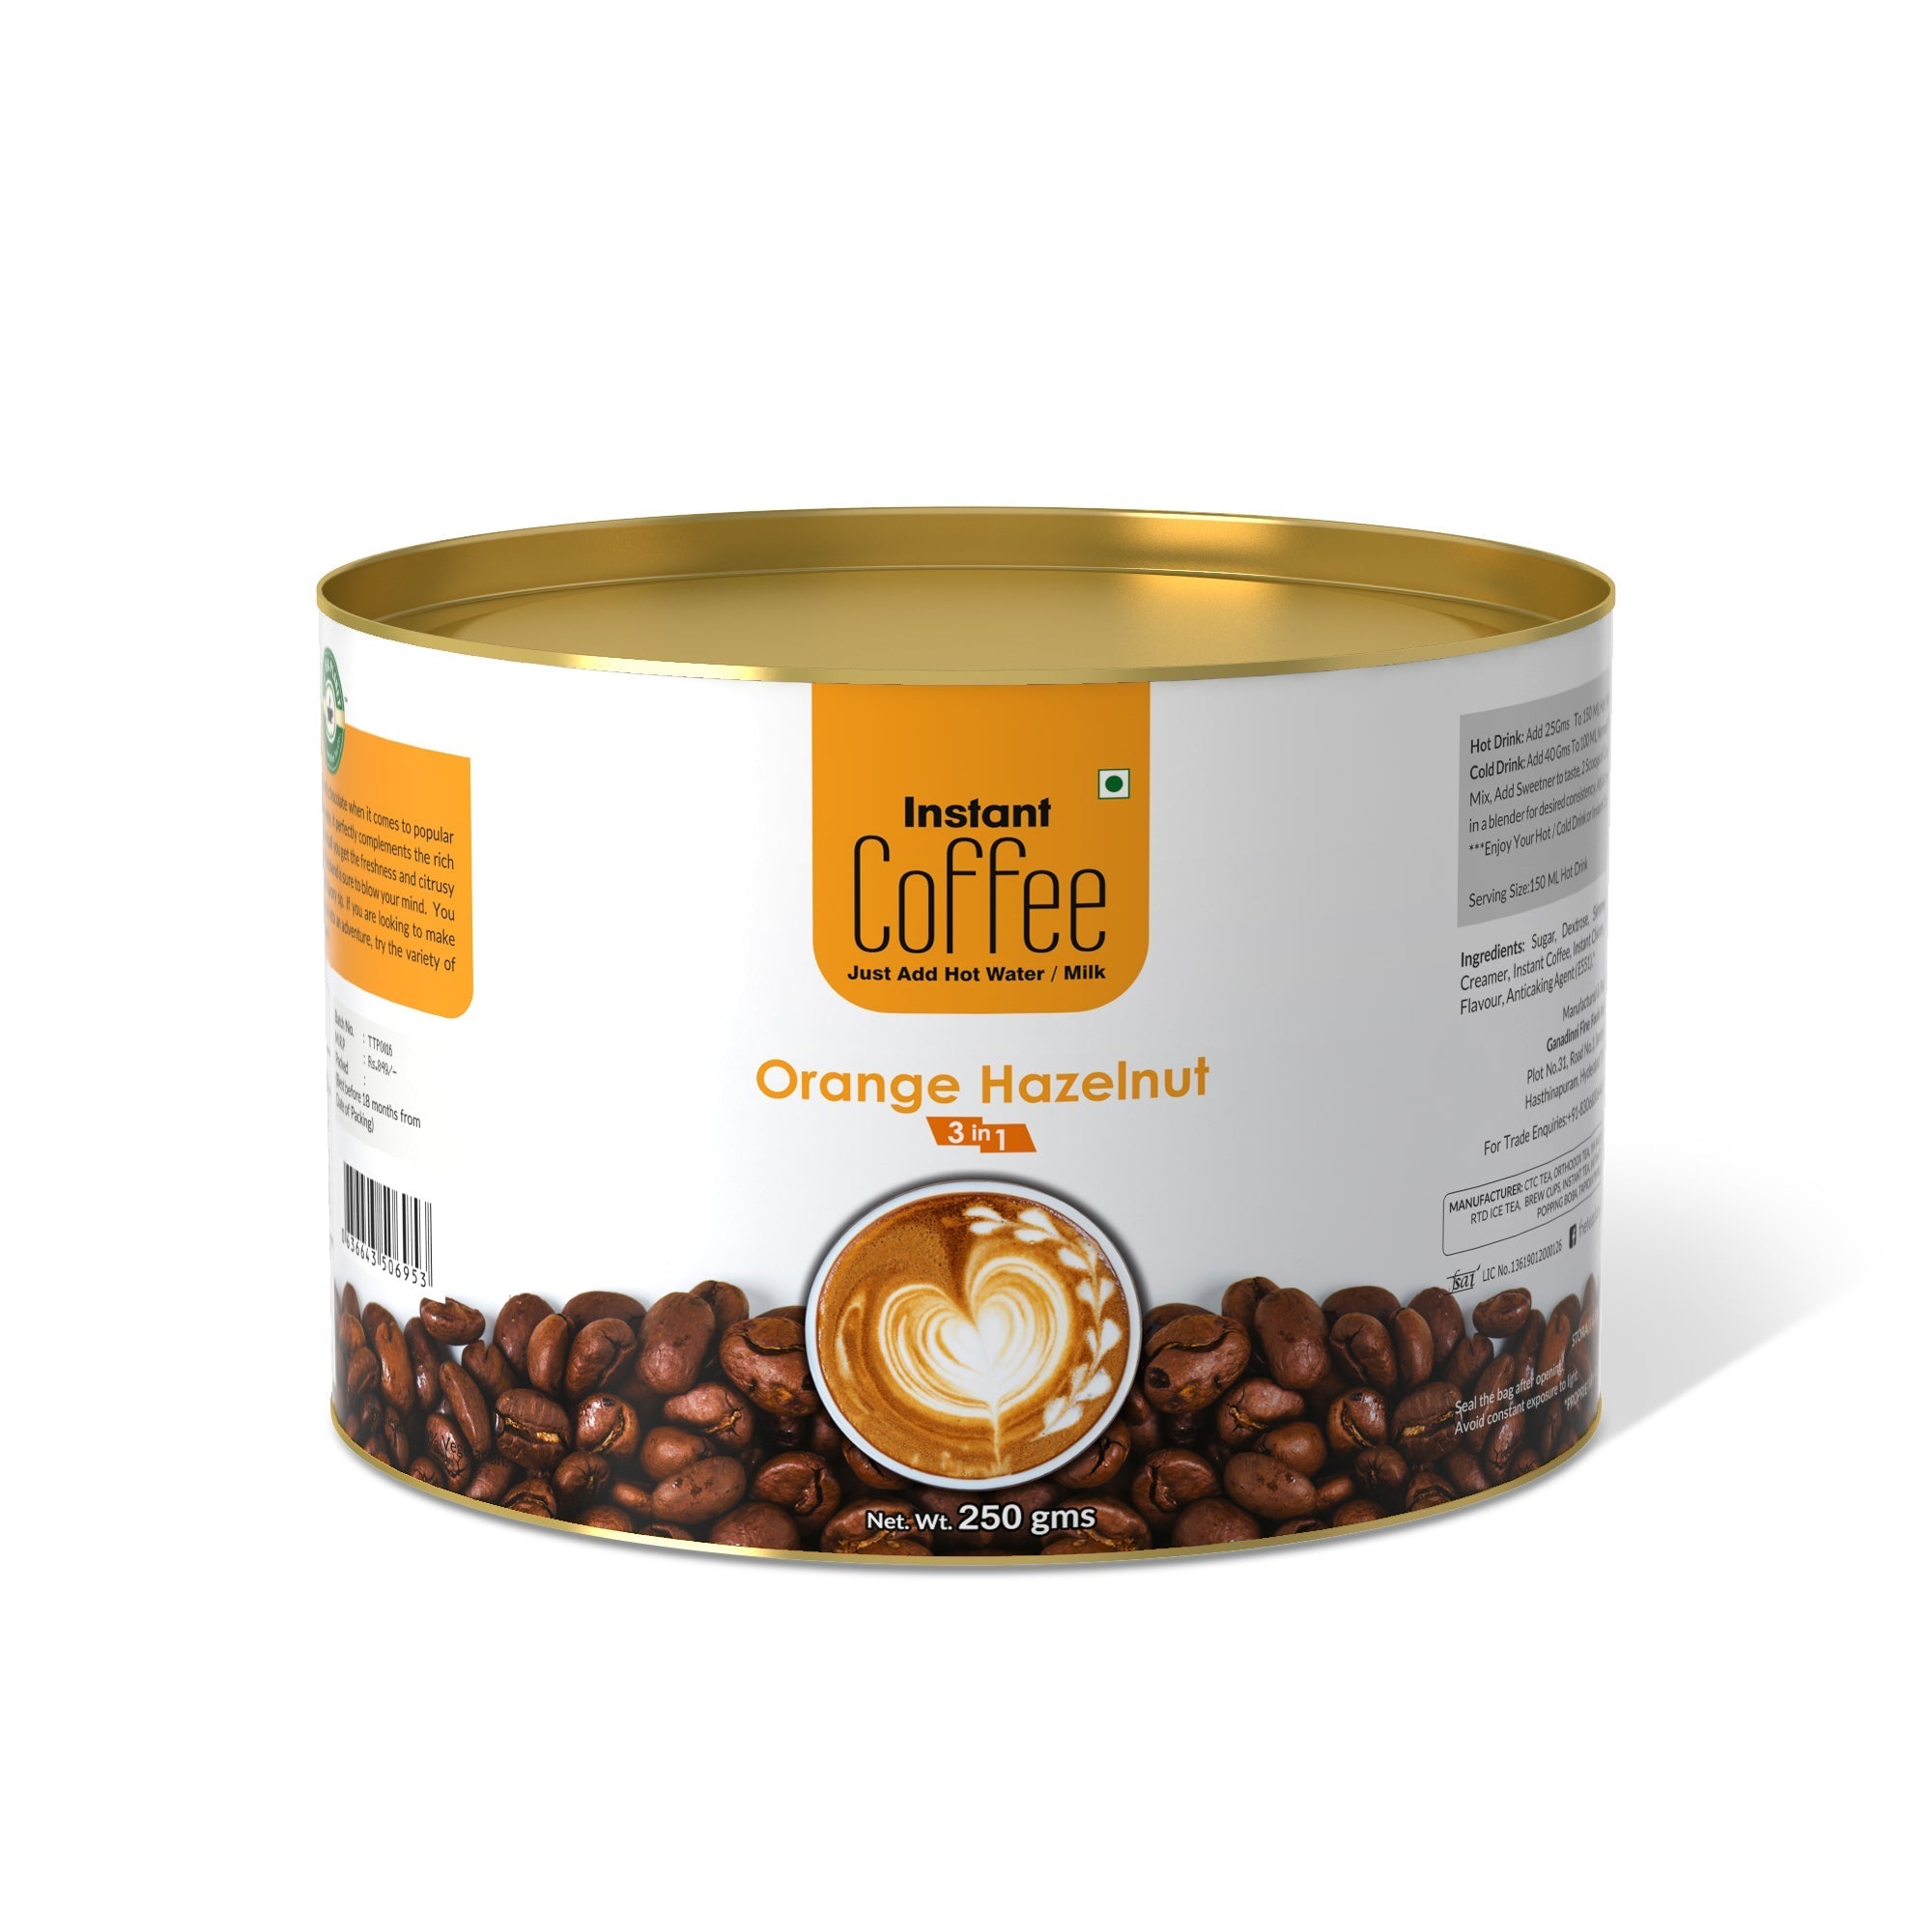 Orange Hazelnut Instant Coffee Premix (3 in 1) - 400 gms